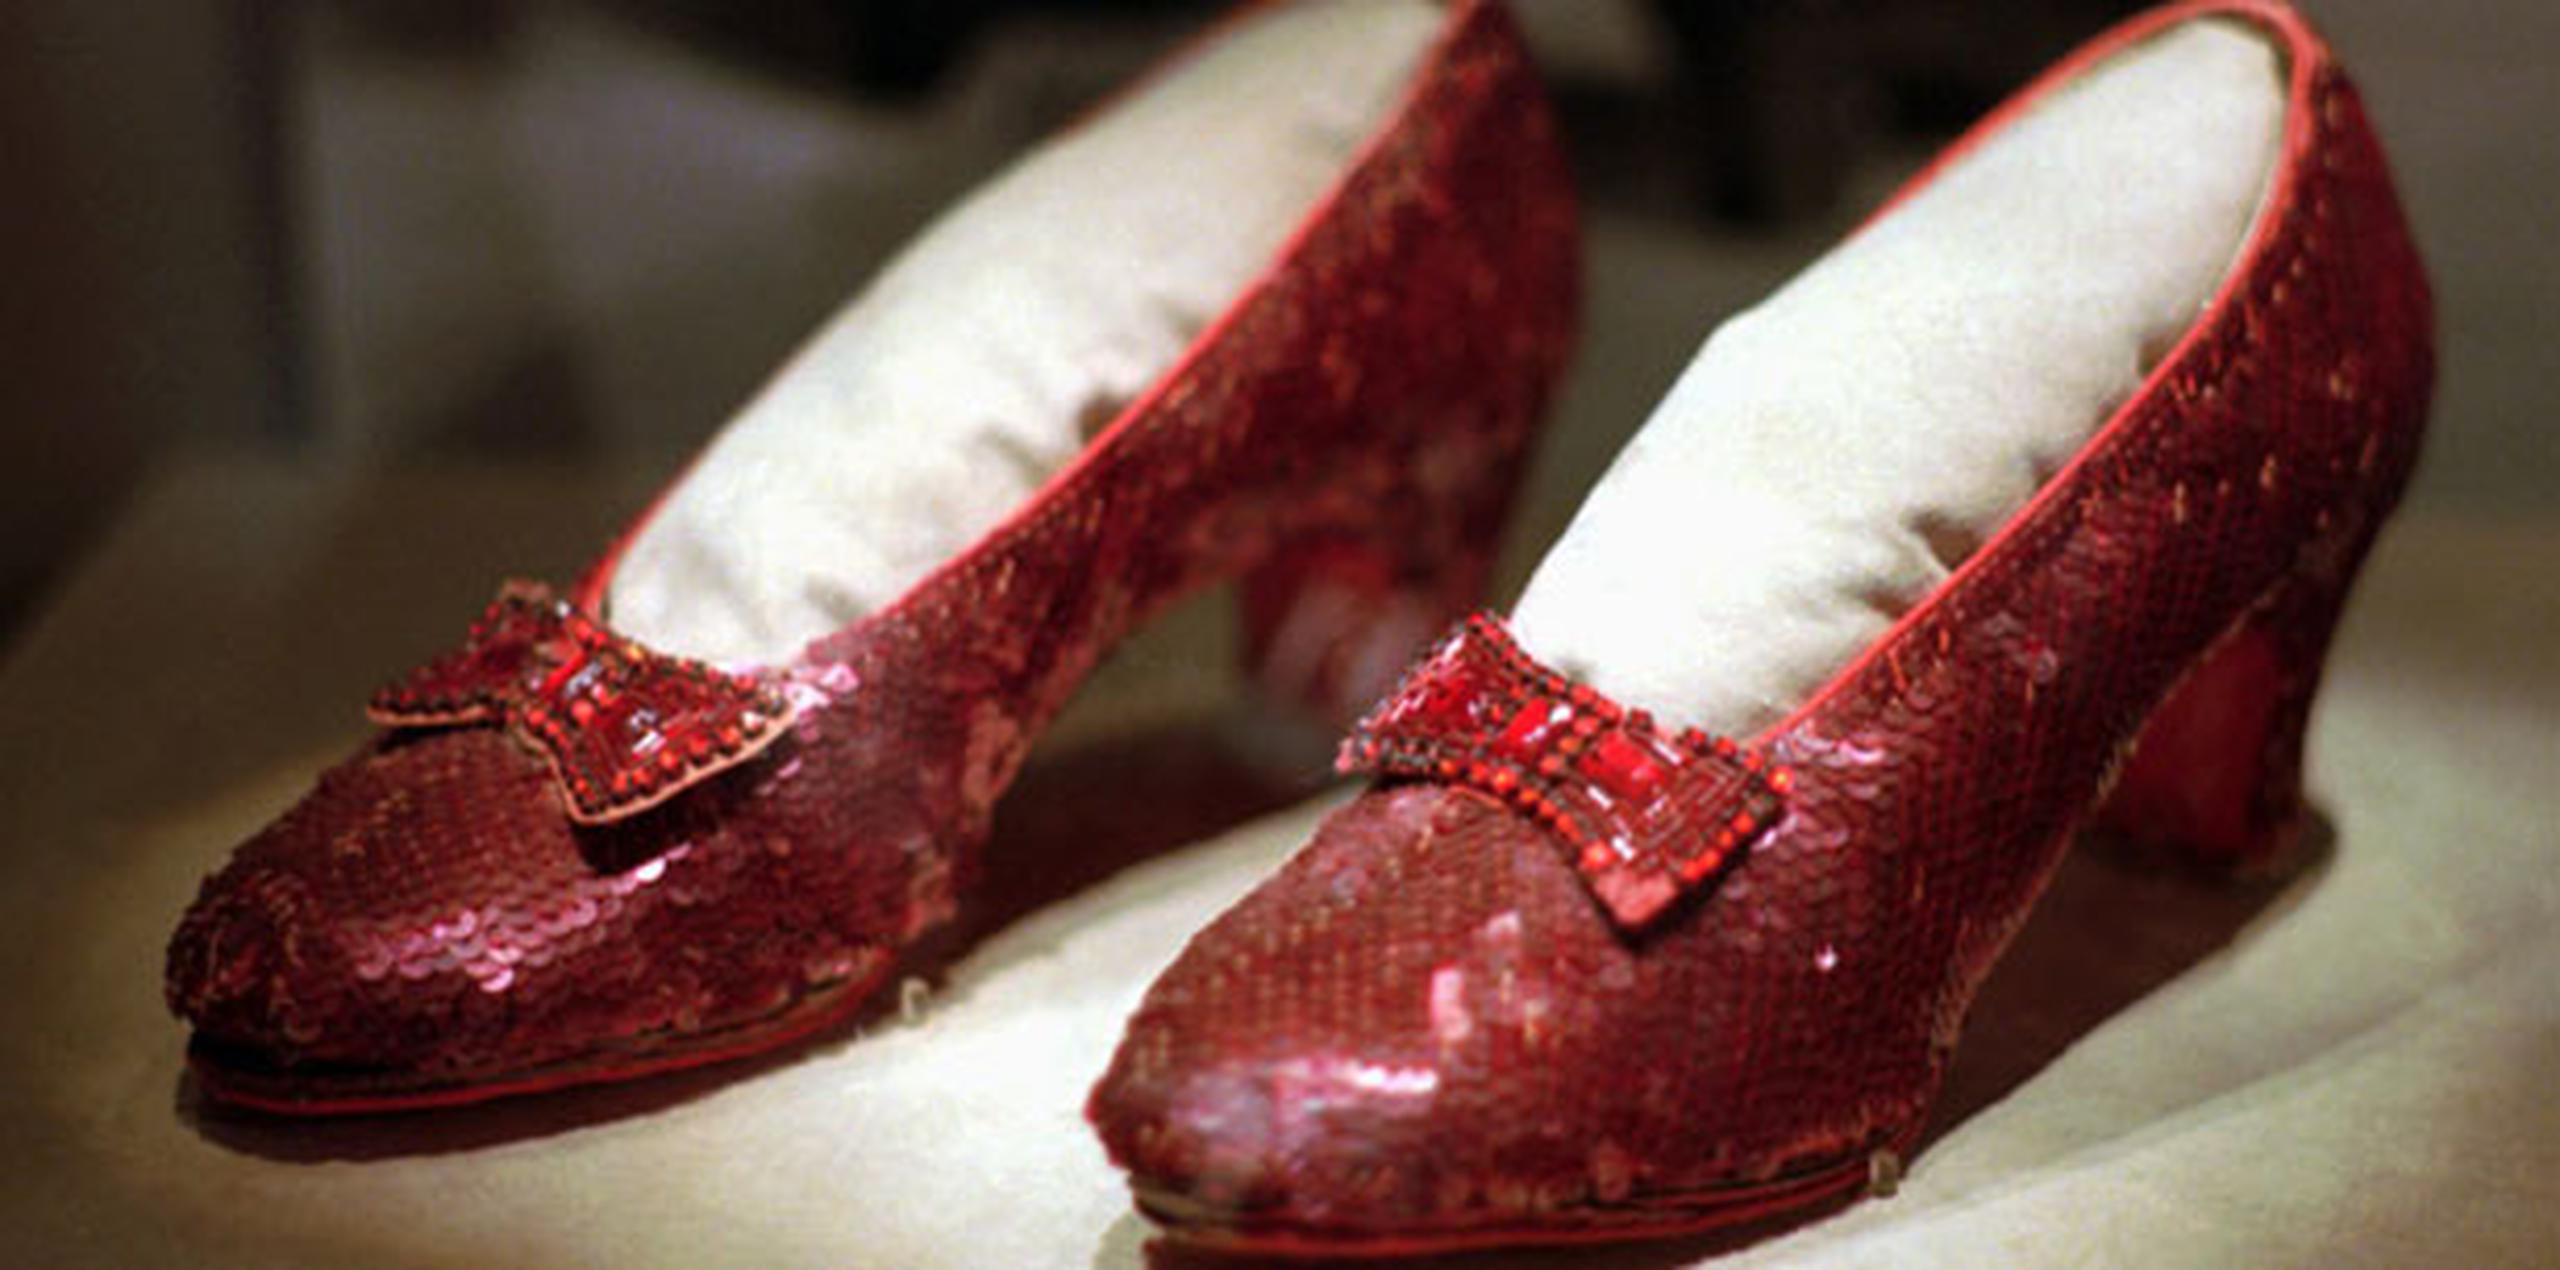 Fueron robadas del Museo de Judy Garland, que abrió en 1975 en la casa en la que vivió y que dice que tiene la colección más grande de artículos de Garland y de “El mago de Oz”. (AP)